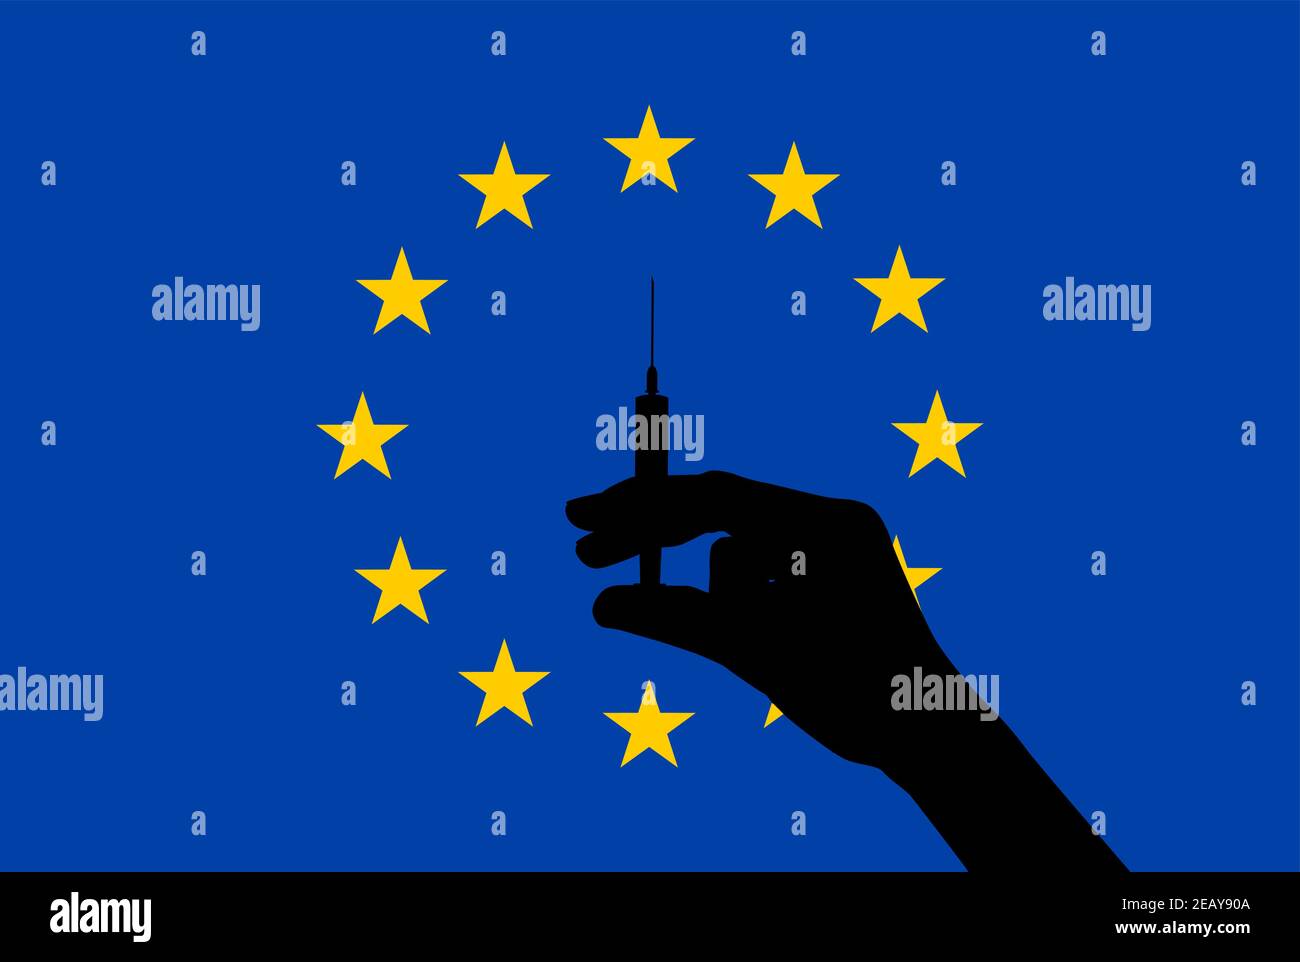 La silhouette noire de la main contient une seringue avec un vaccin contre le drapeau de l'UE. La vaccination dans l'Union européenne. Illustration vectorielle Illustration de Vecteur